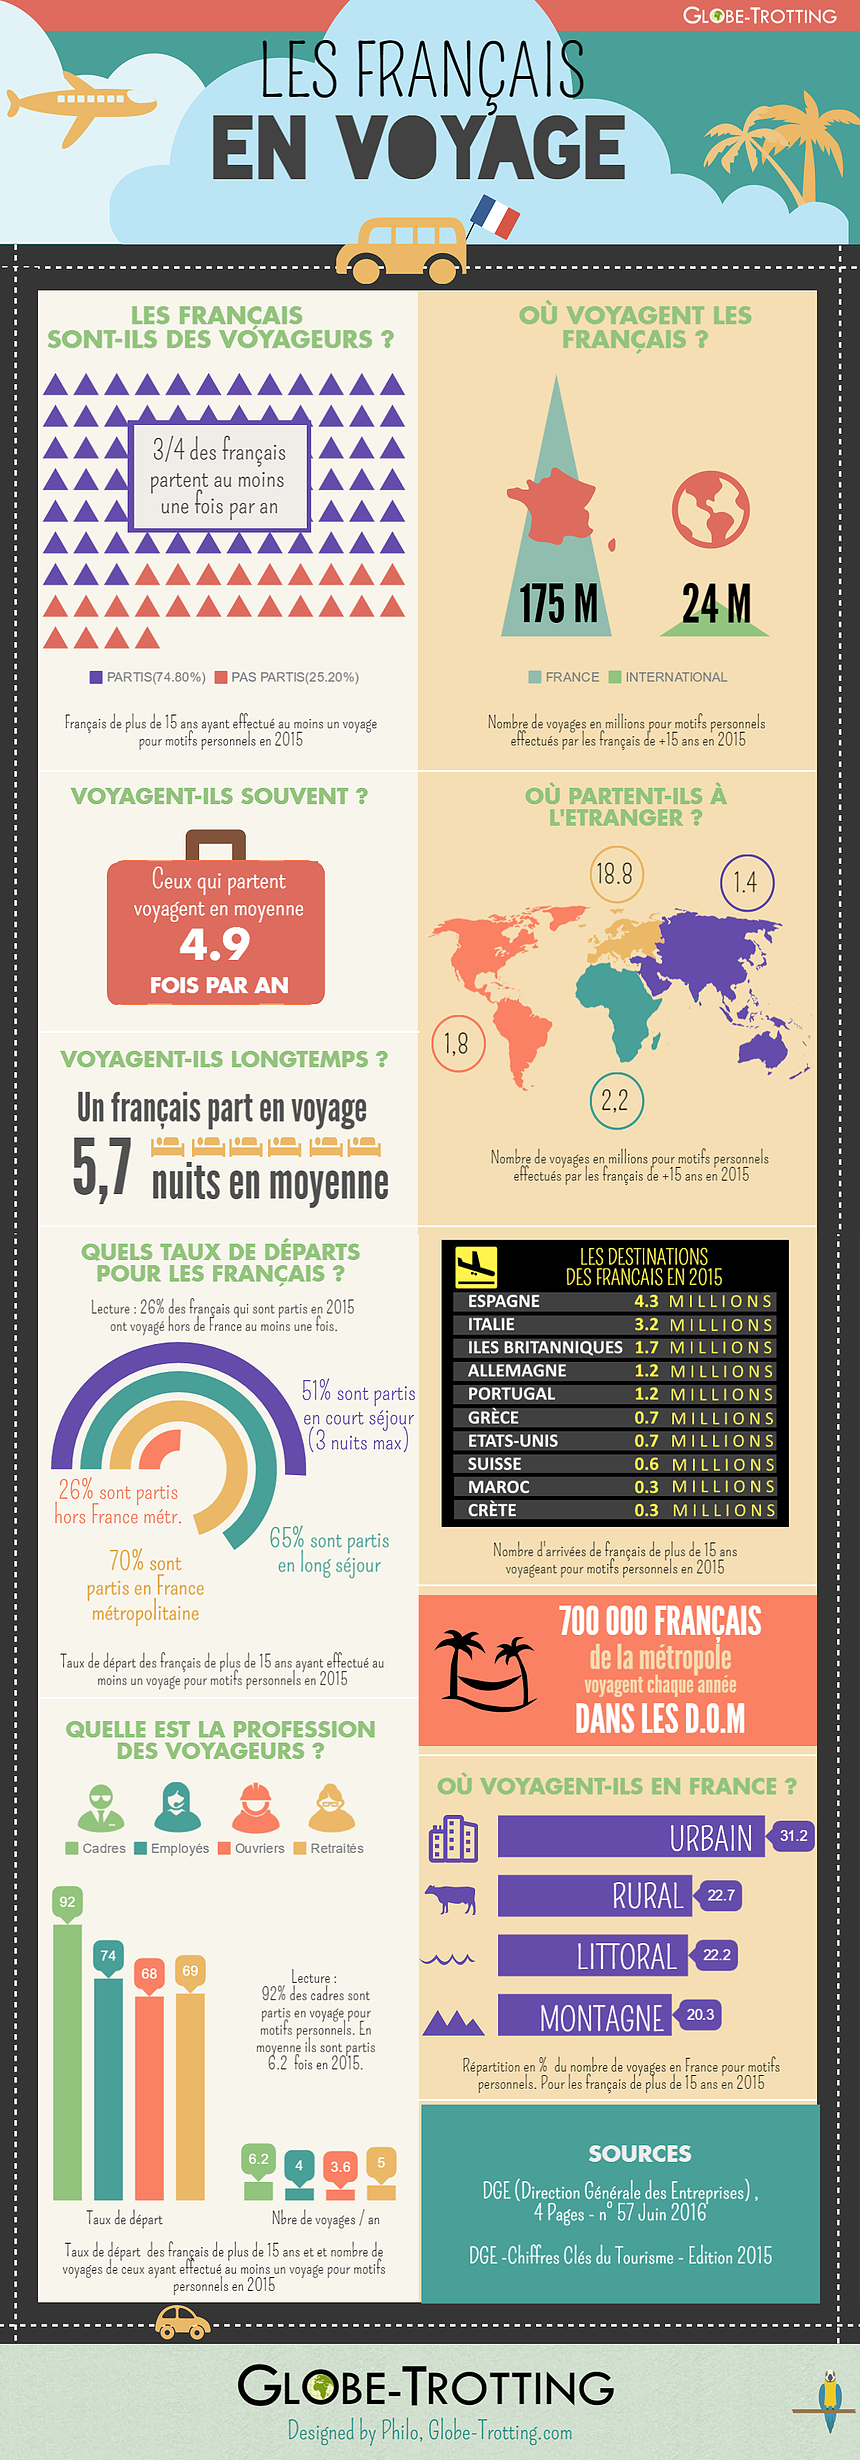 Infographie : les chiffres des voyages des Français en 2015